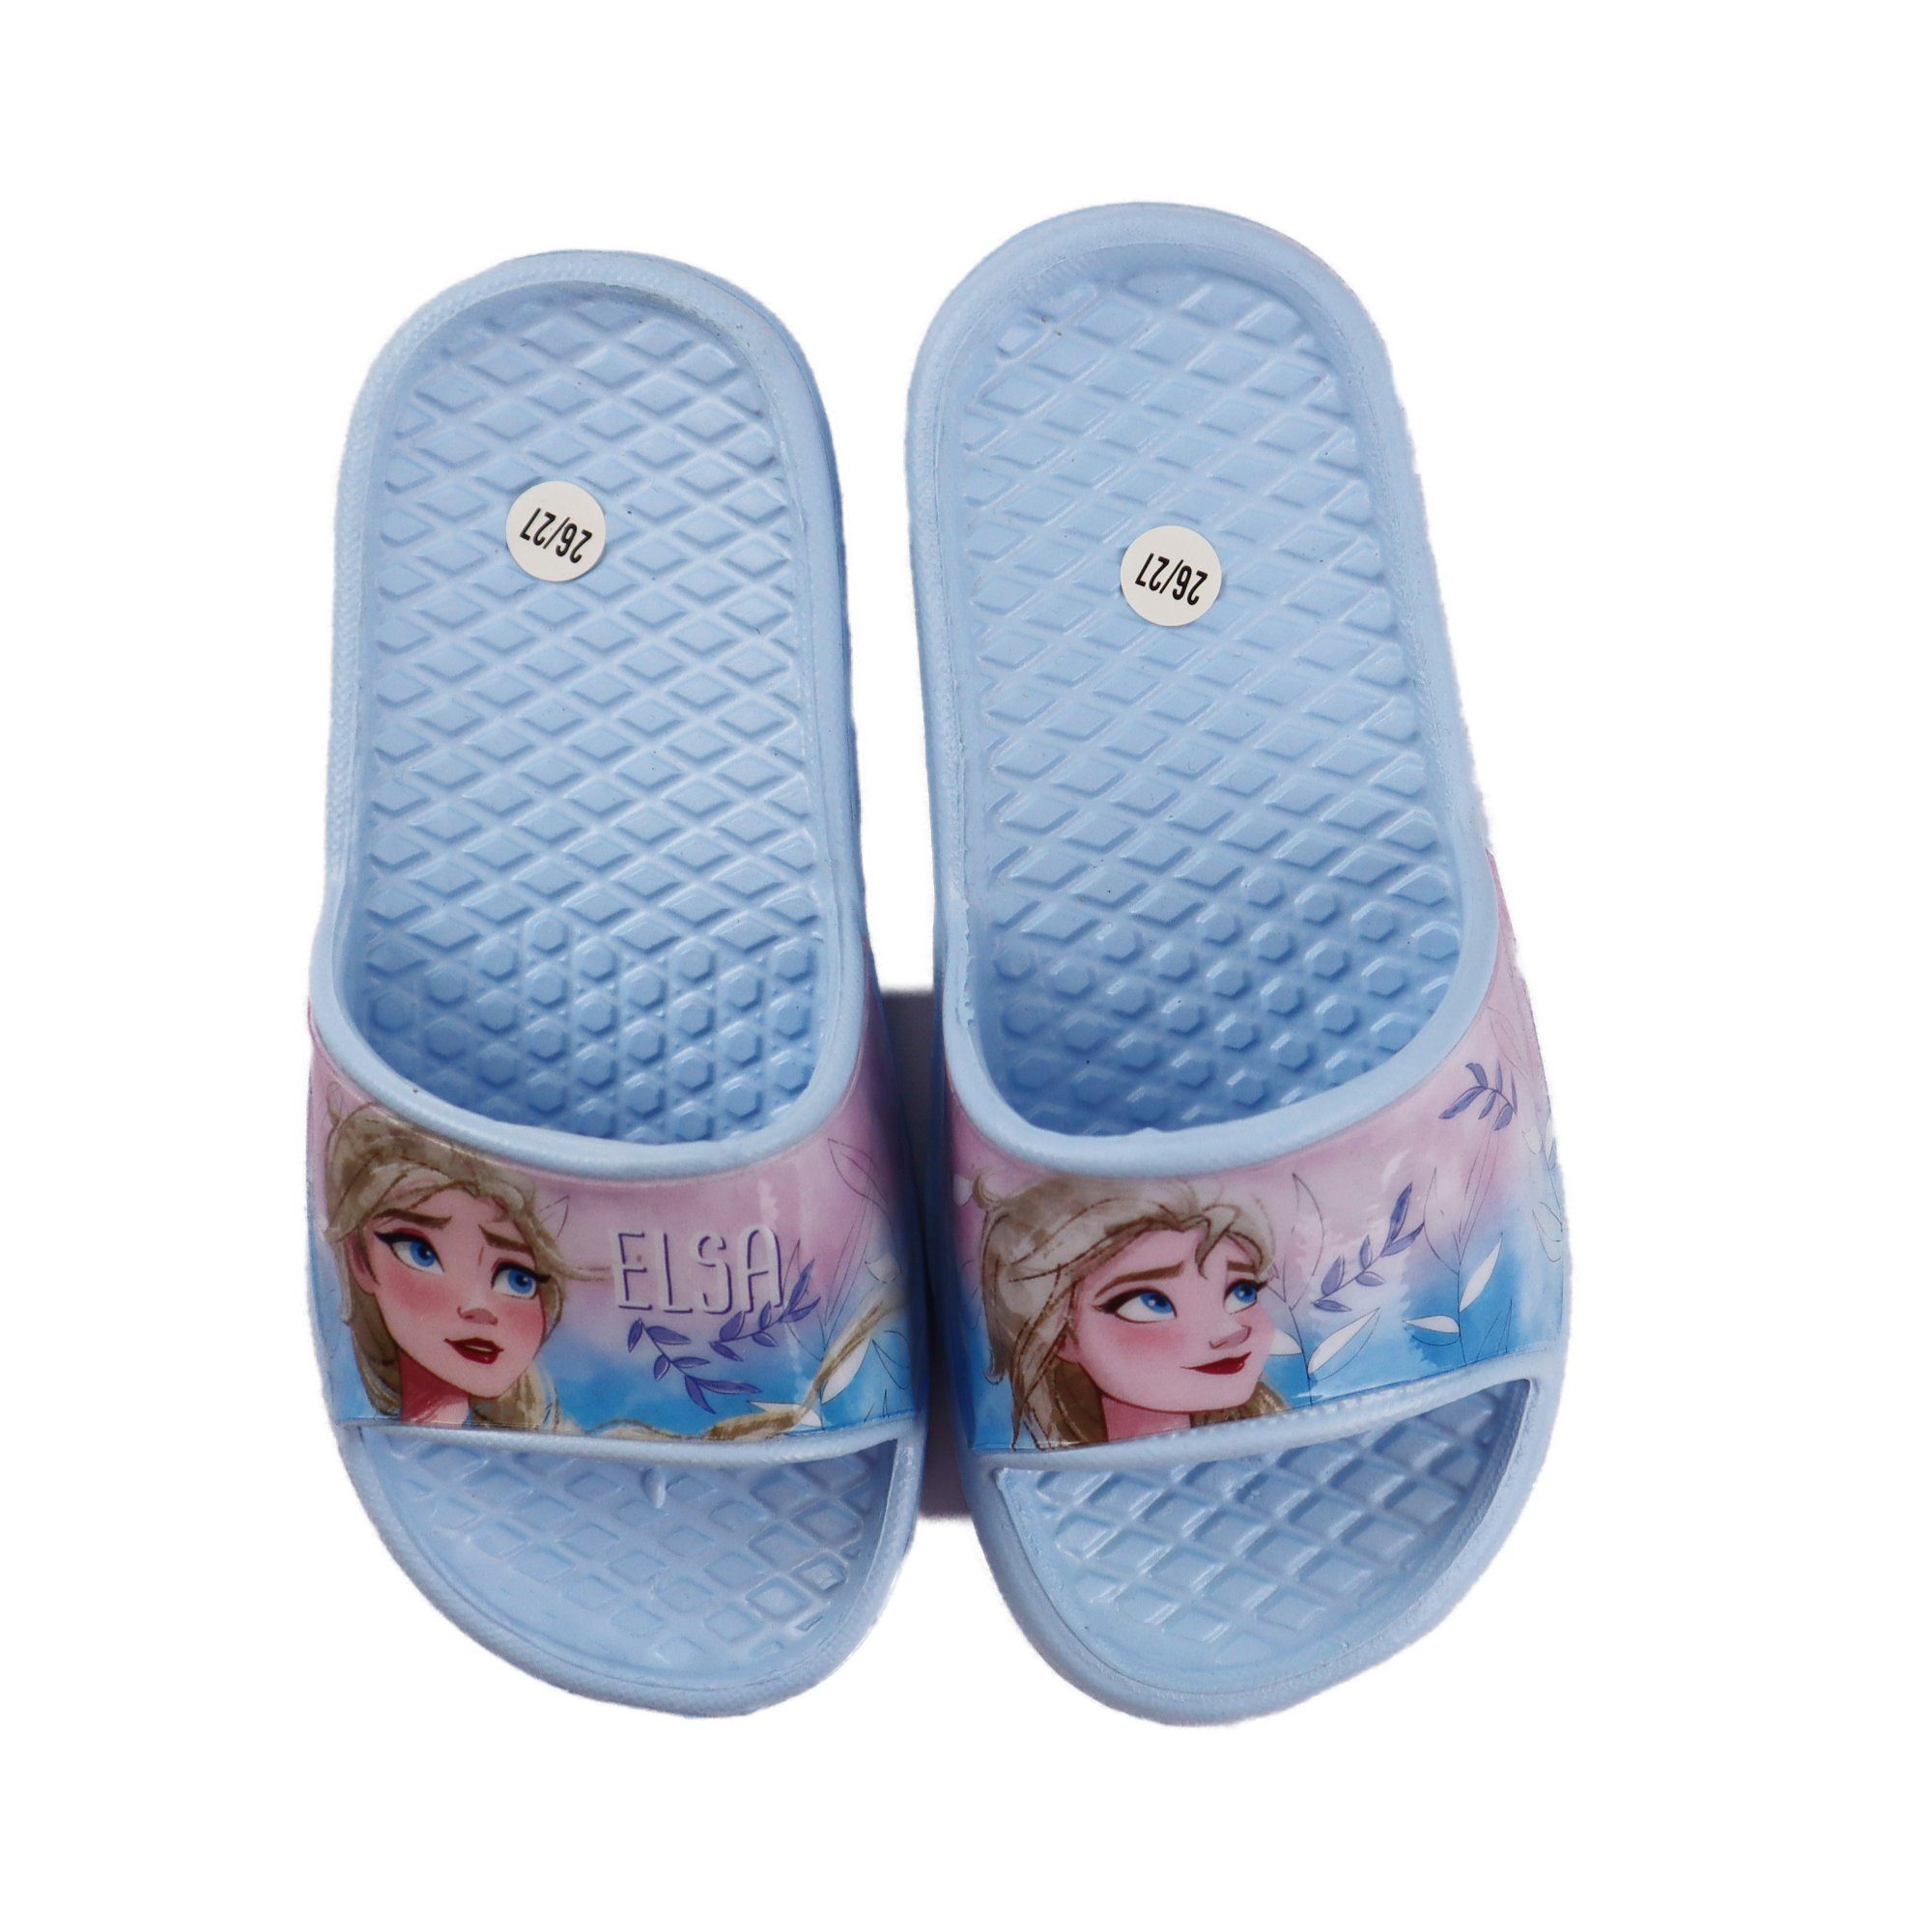 Frozen Mädchen Sandalen Lila oder 31, 24 Disney Eiskönigin Blau Kinder bis Gr. Sandale Die Elsa